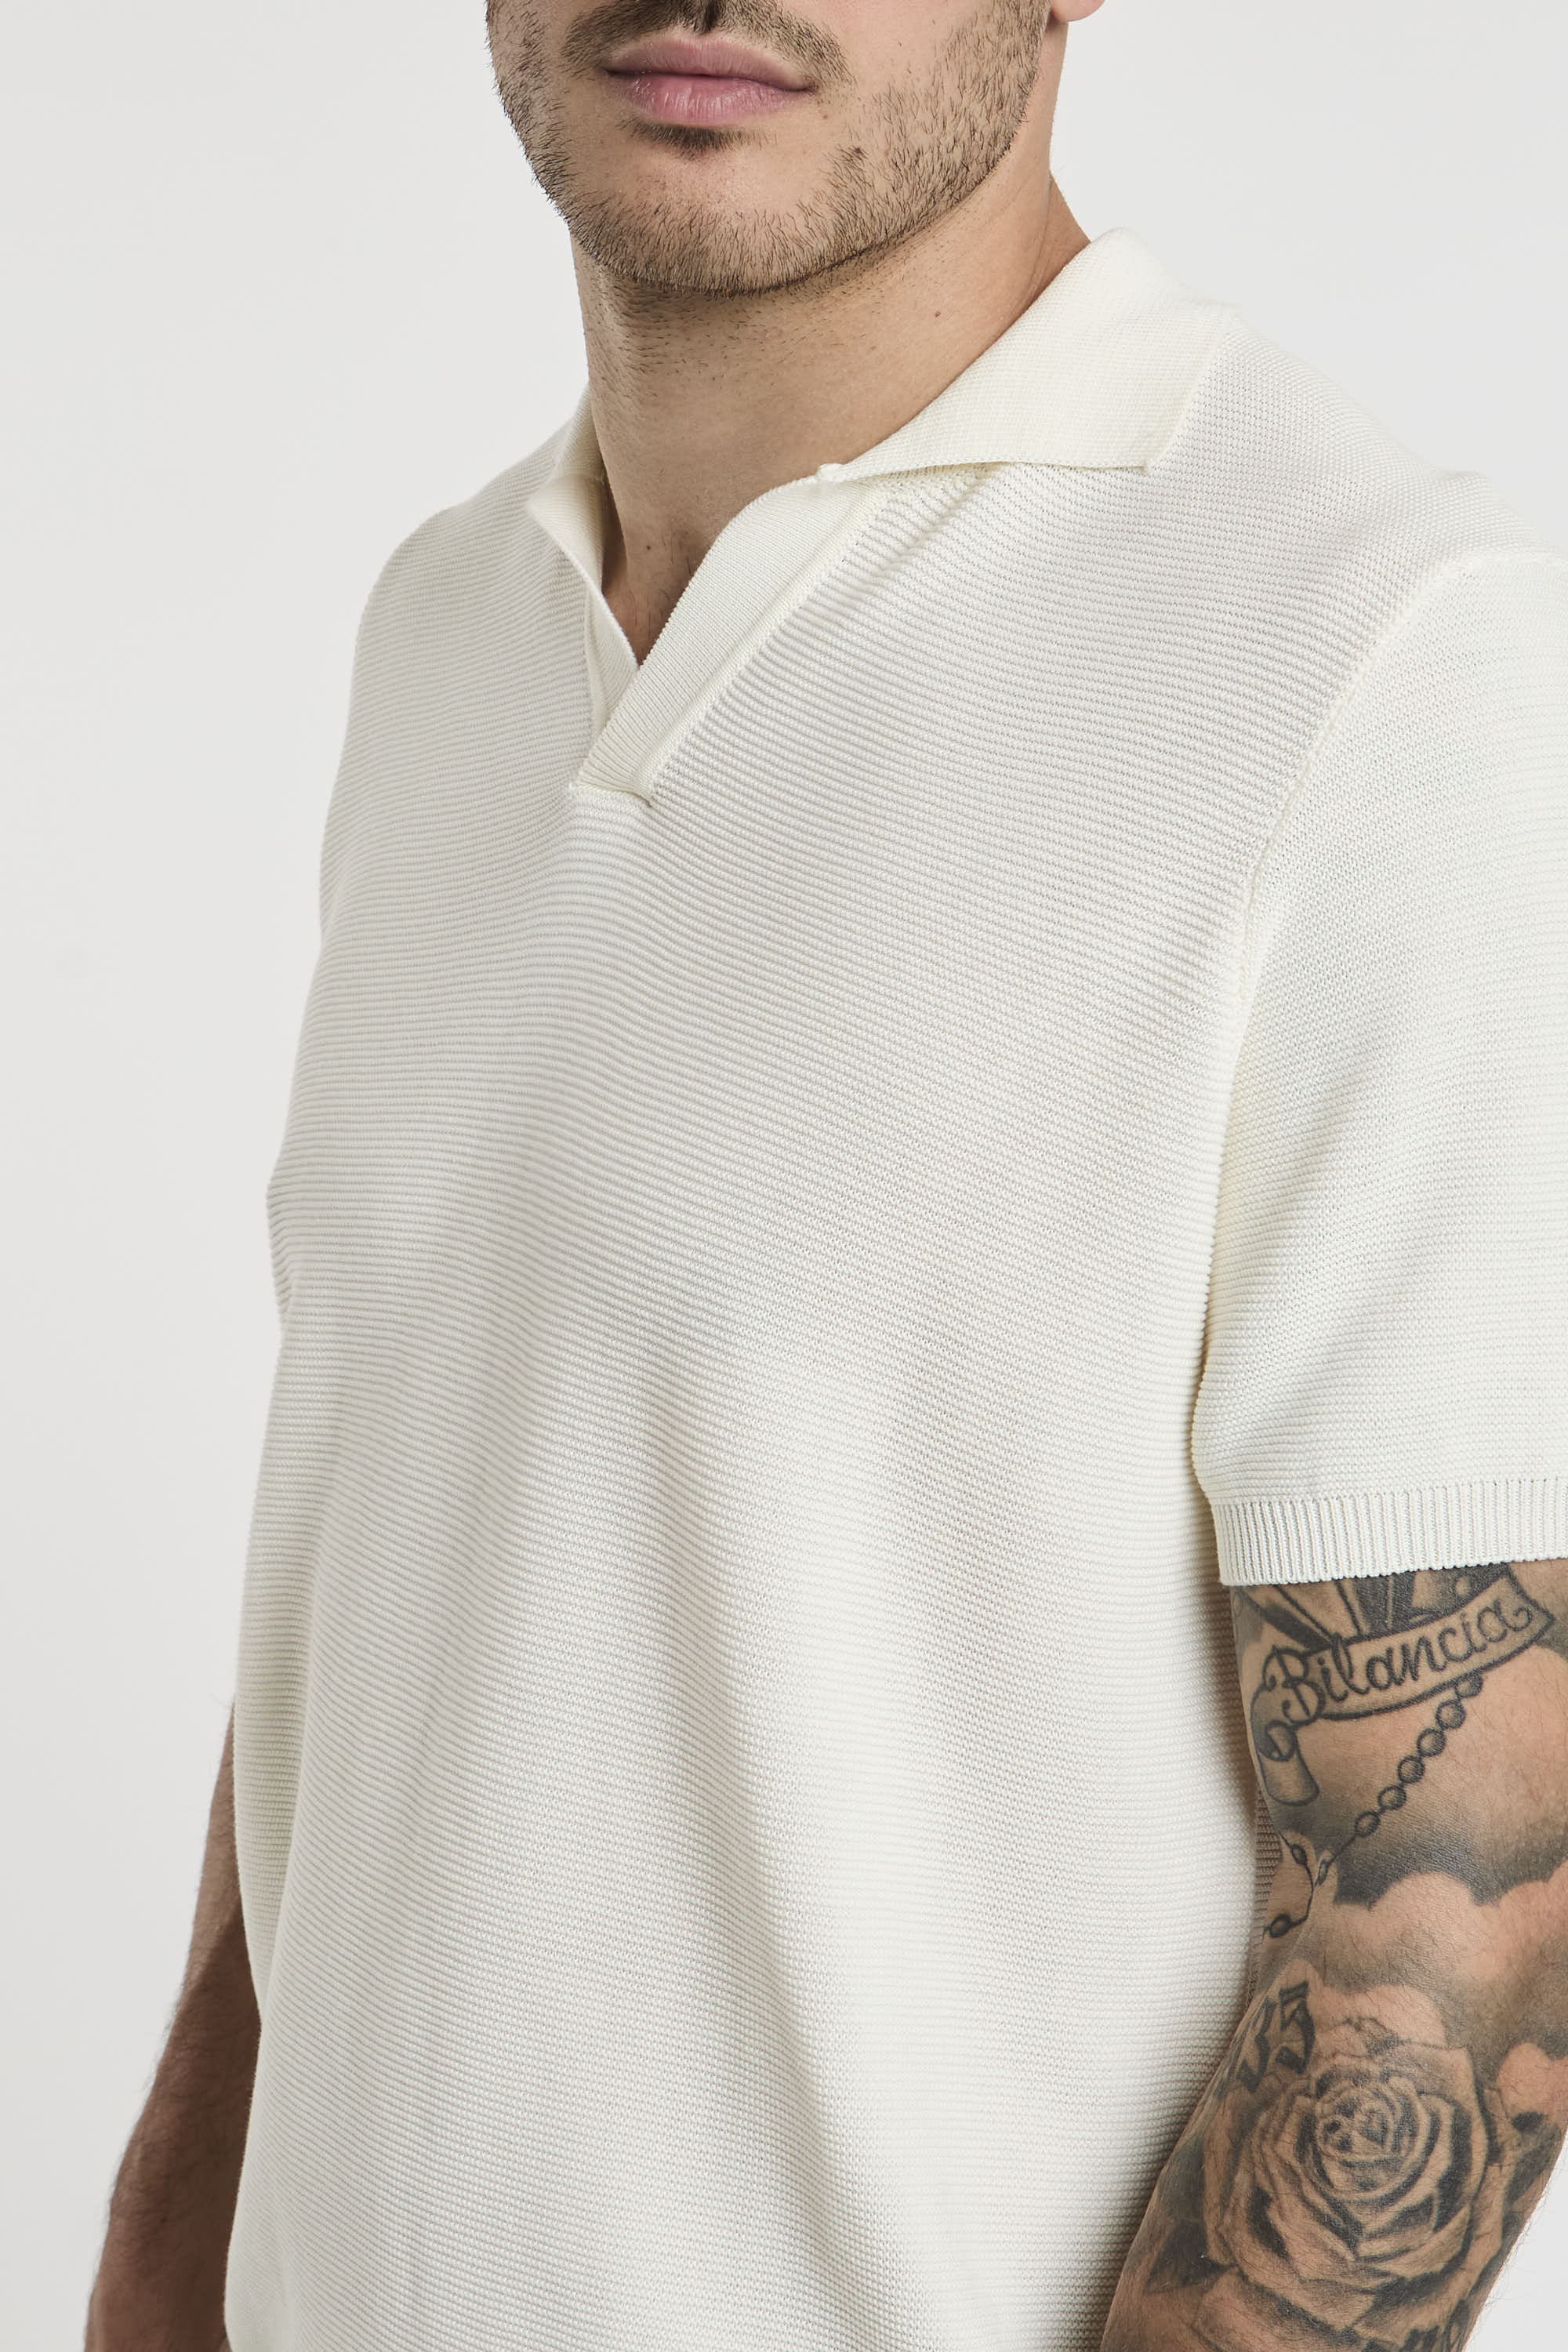 Drumohr Cotton Polo with White Piqué Stitching-4